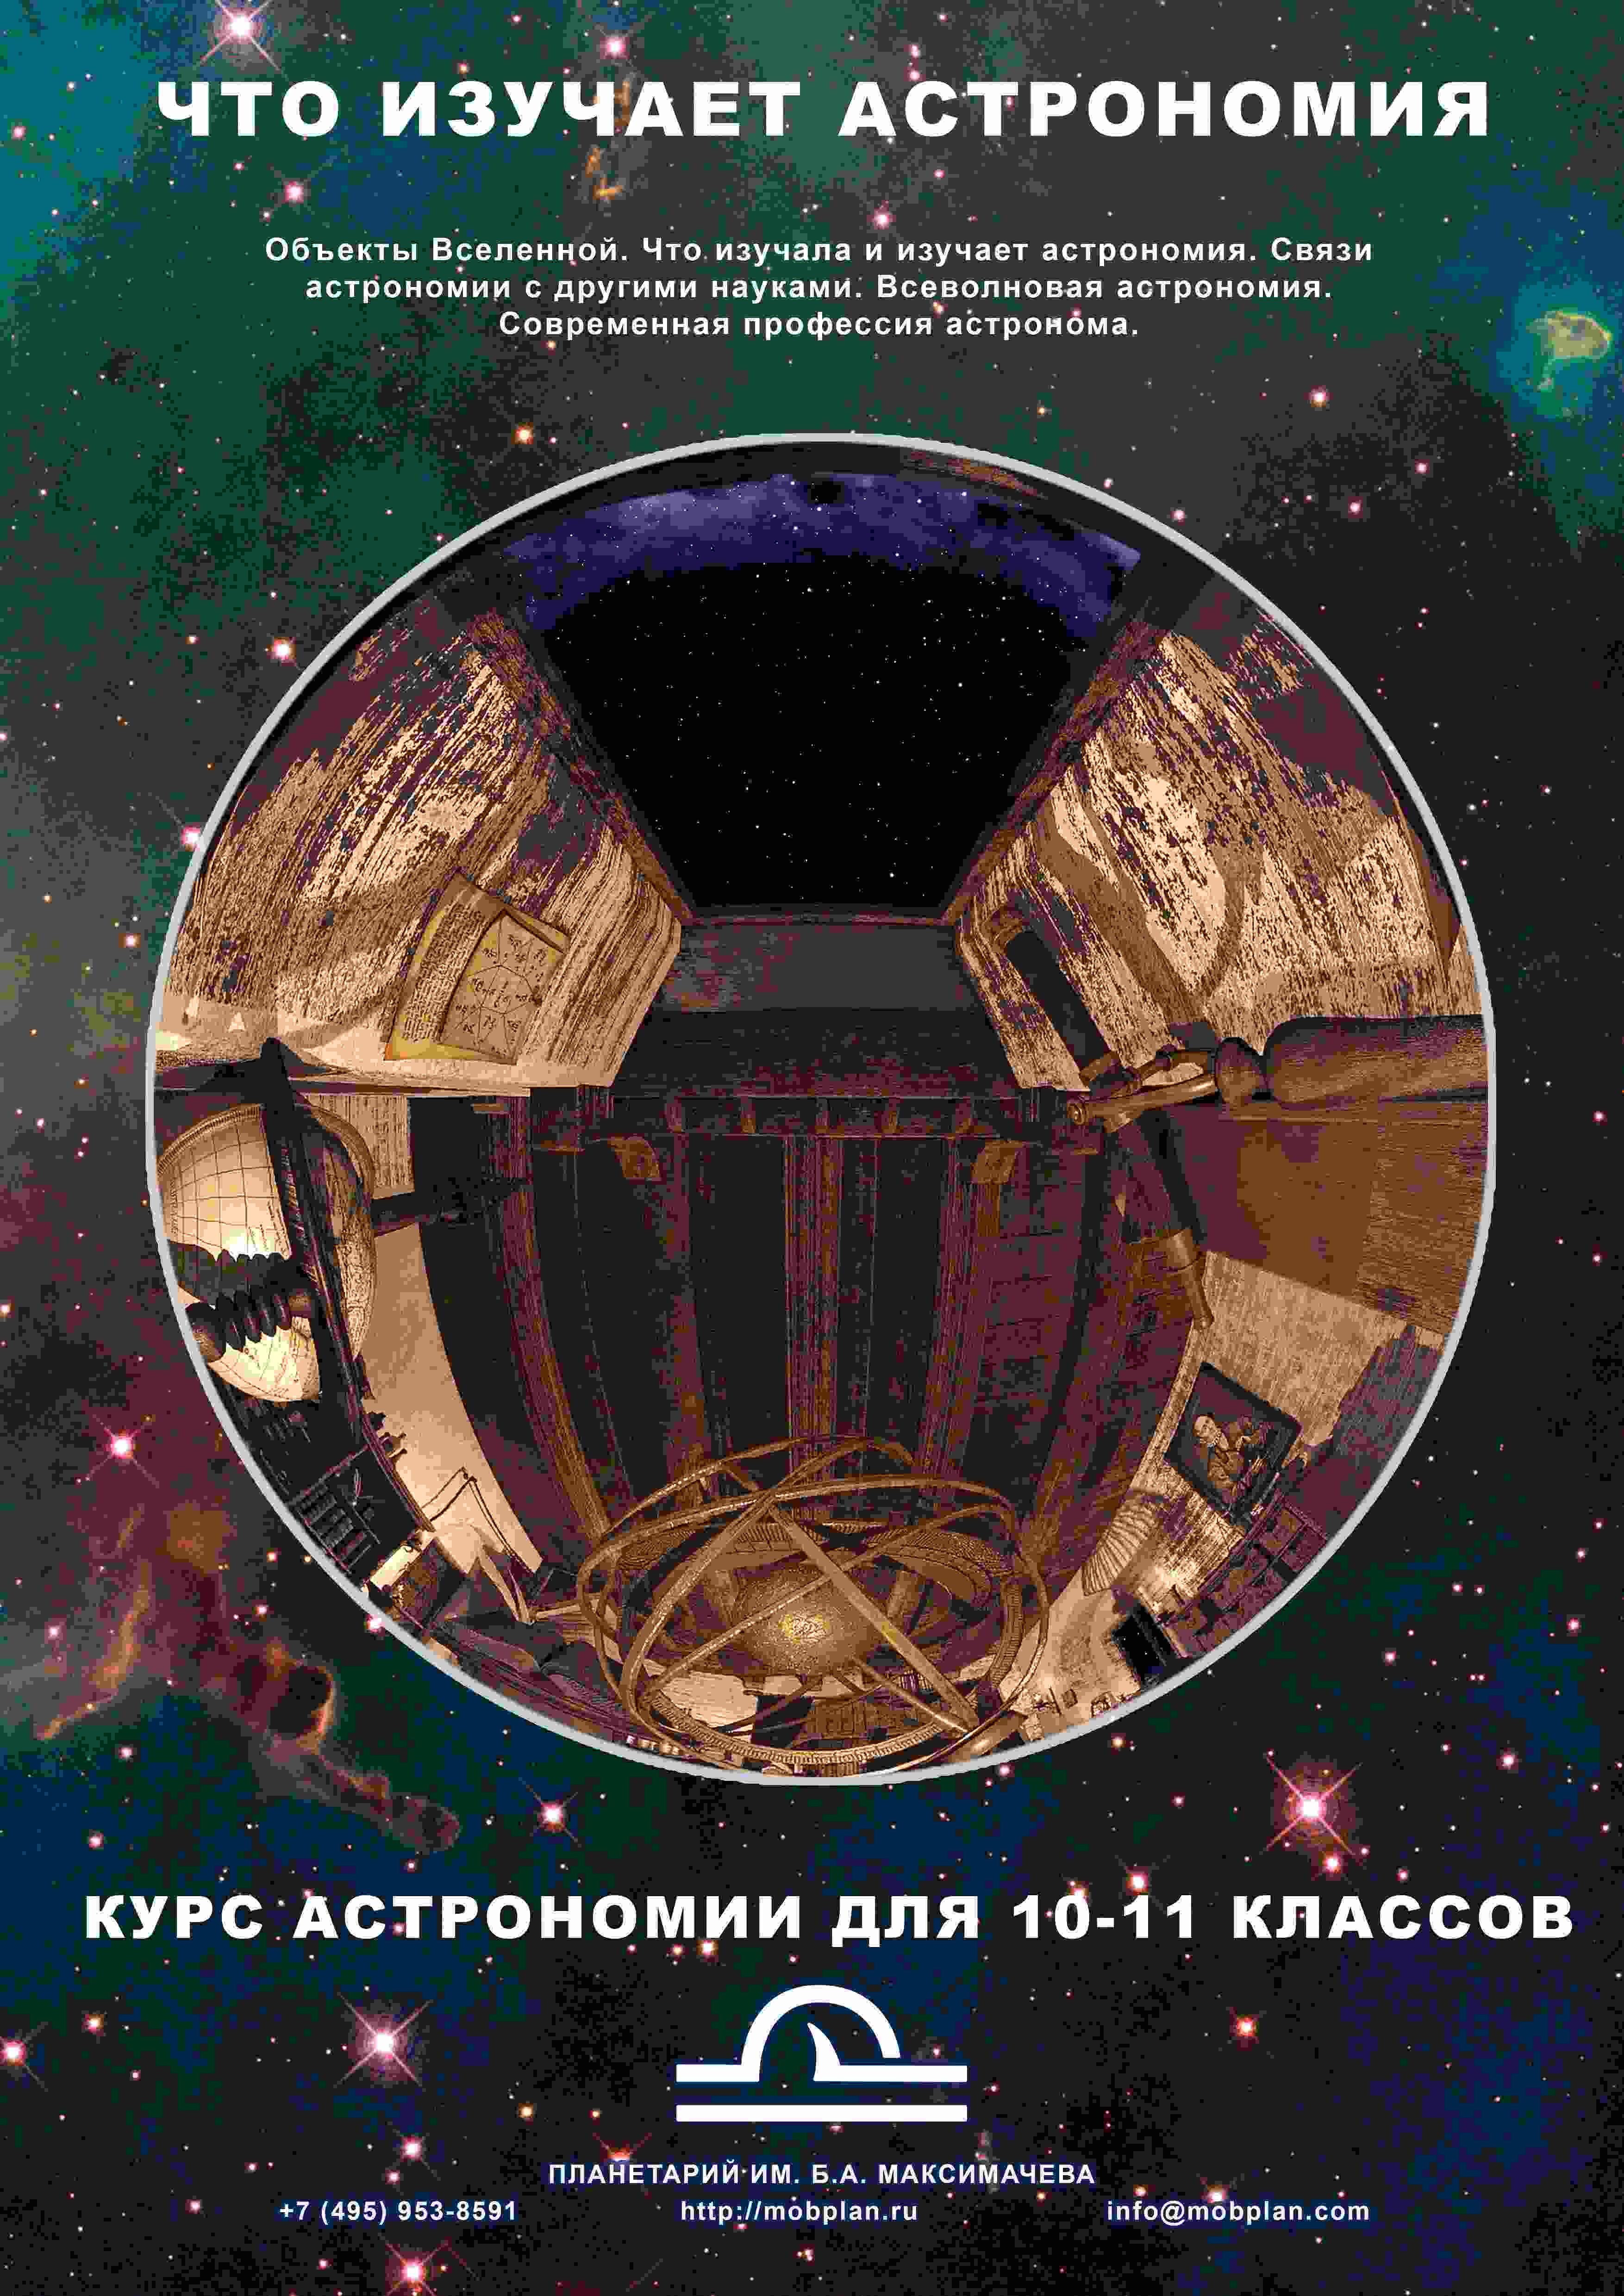 “Что изучает астрономия” - вводное занятие в планетарии (14+) по Пушкинской карте для групп и индивидуальных учащихся